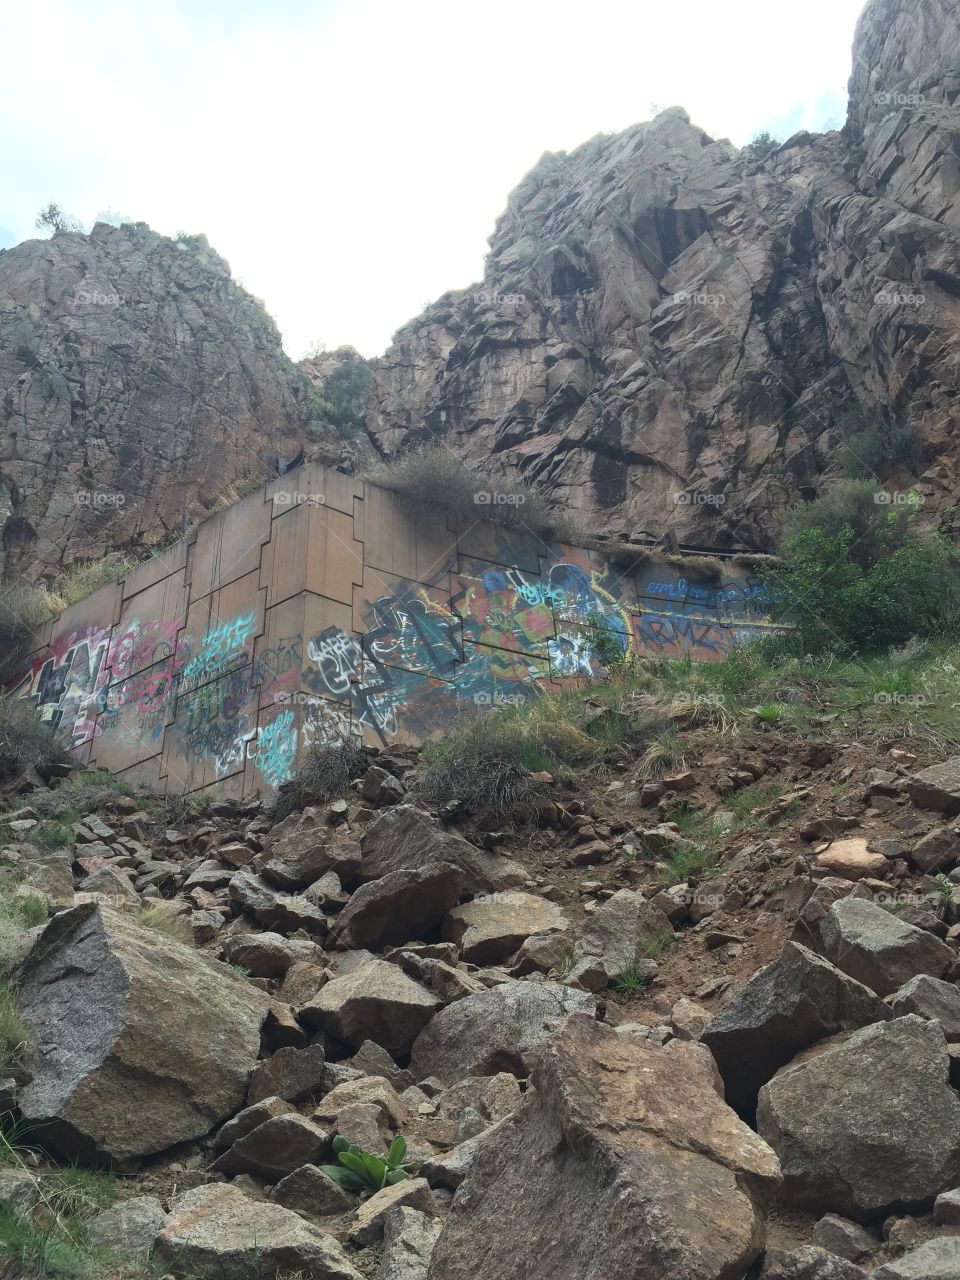 Mountain graffiti 